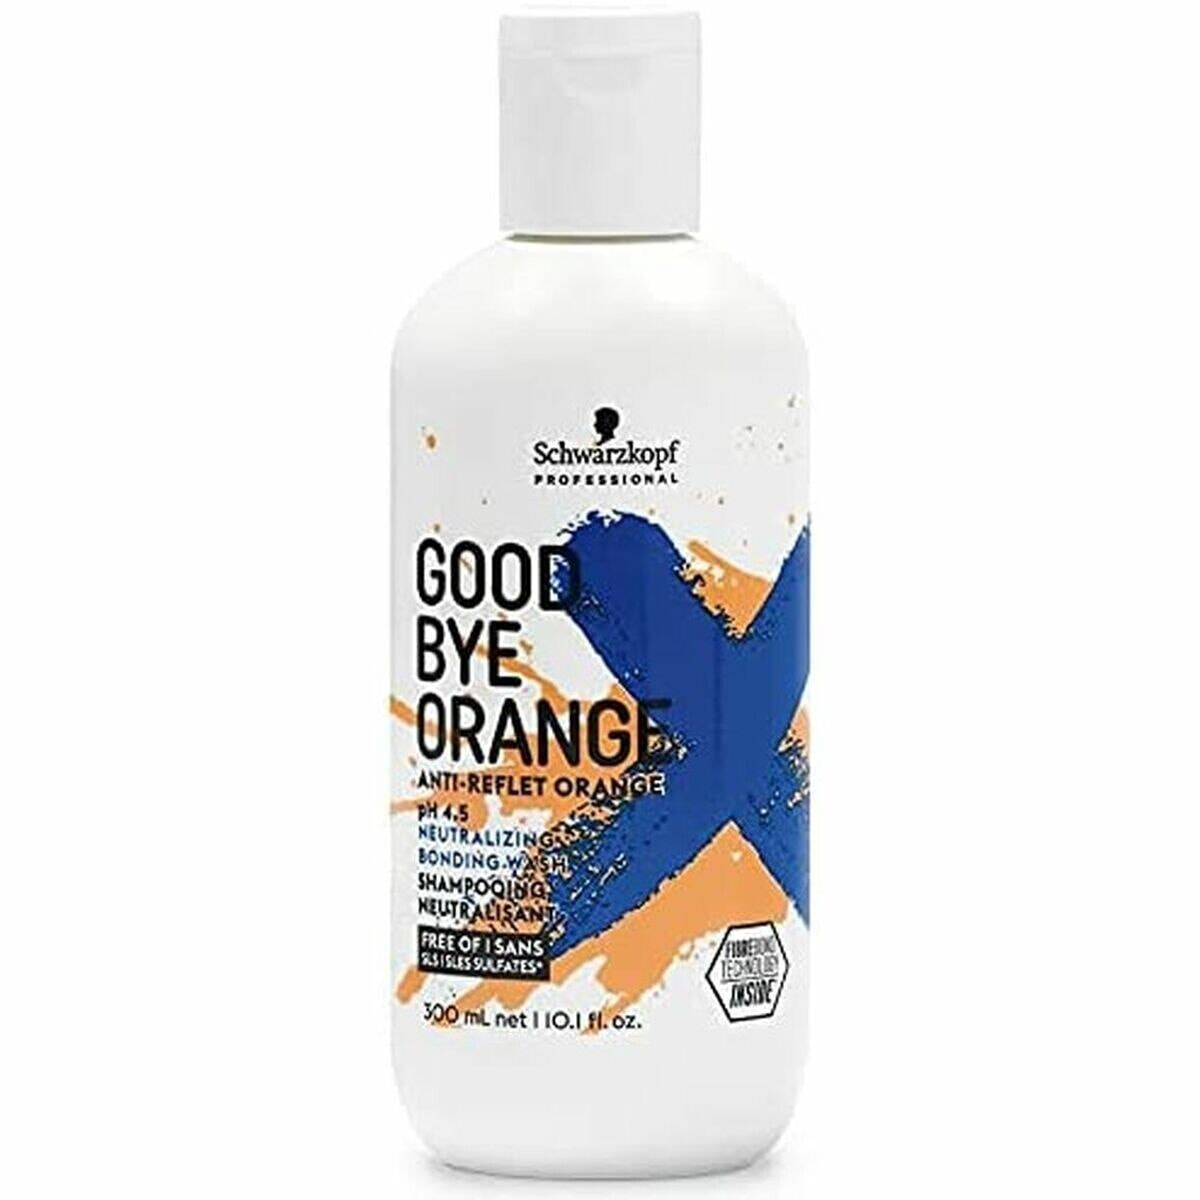 Toner Goodbye Orange Schwarzkopf Goodbye Orange 300 ml (300 ml)